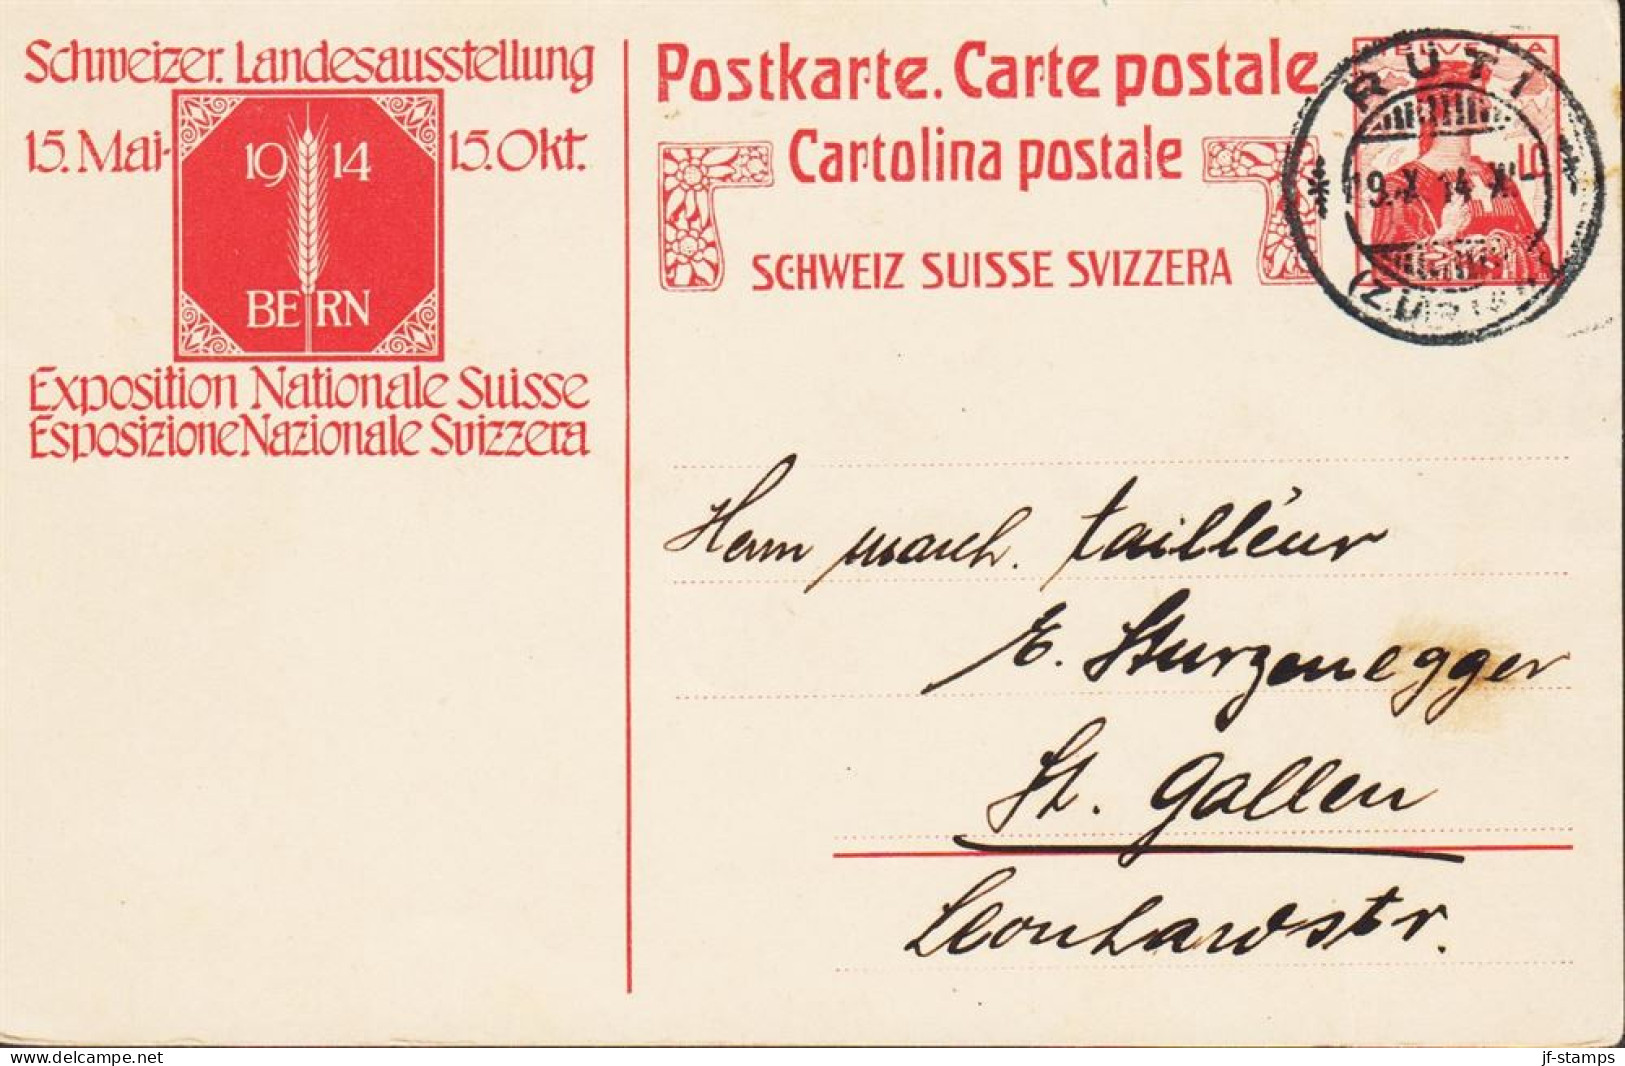 1914. SCHWEIZ. 10 C. HELVETIA Postkarte Schweizer Landseausstellung 1914. Cancelled __RÜTI 19 X 14. __  - JF545721 - Stamped Stationery